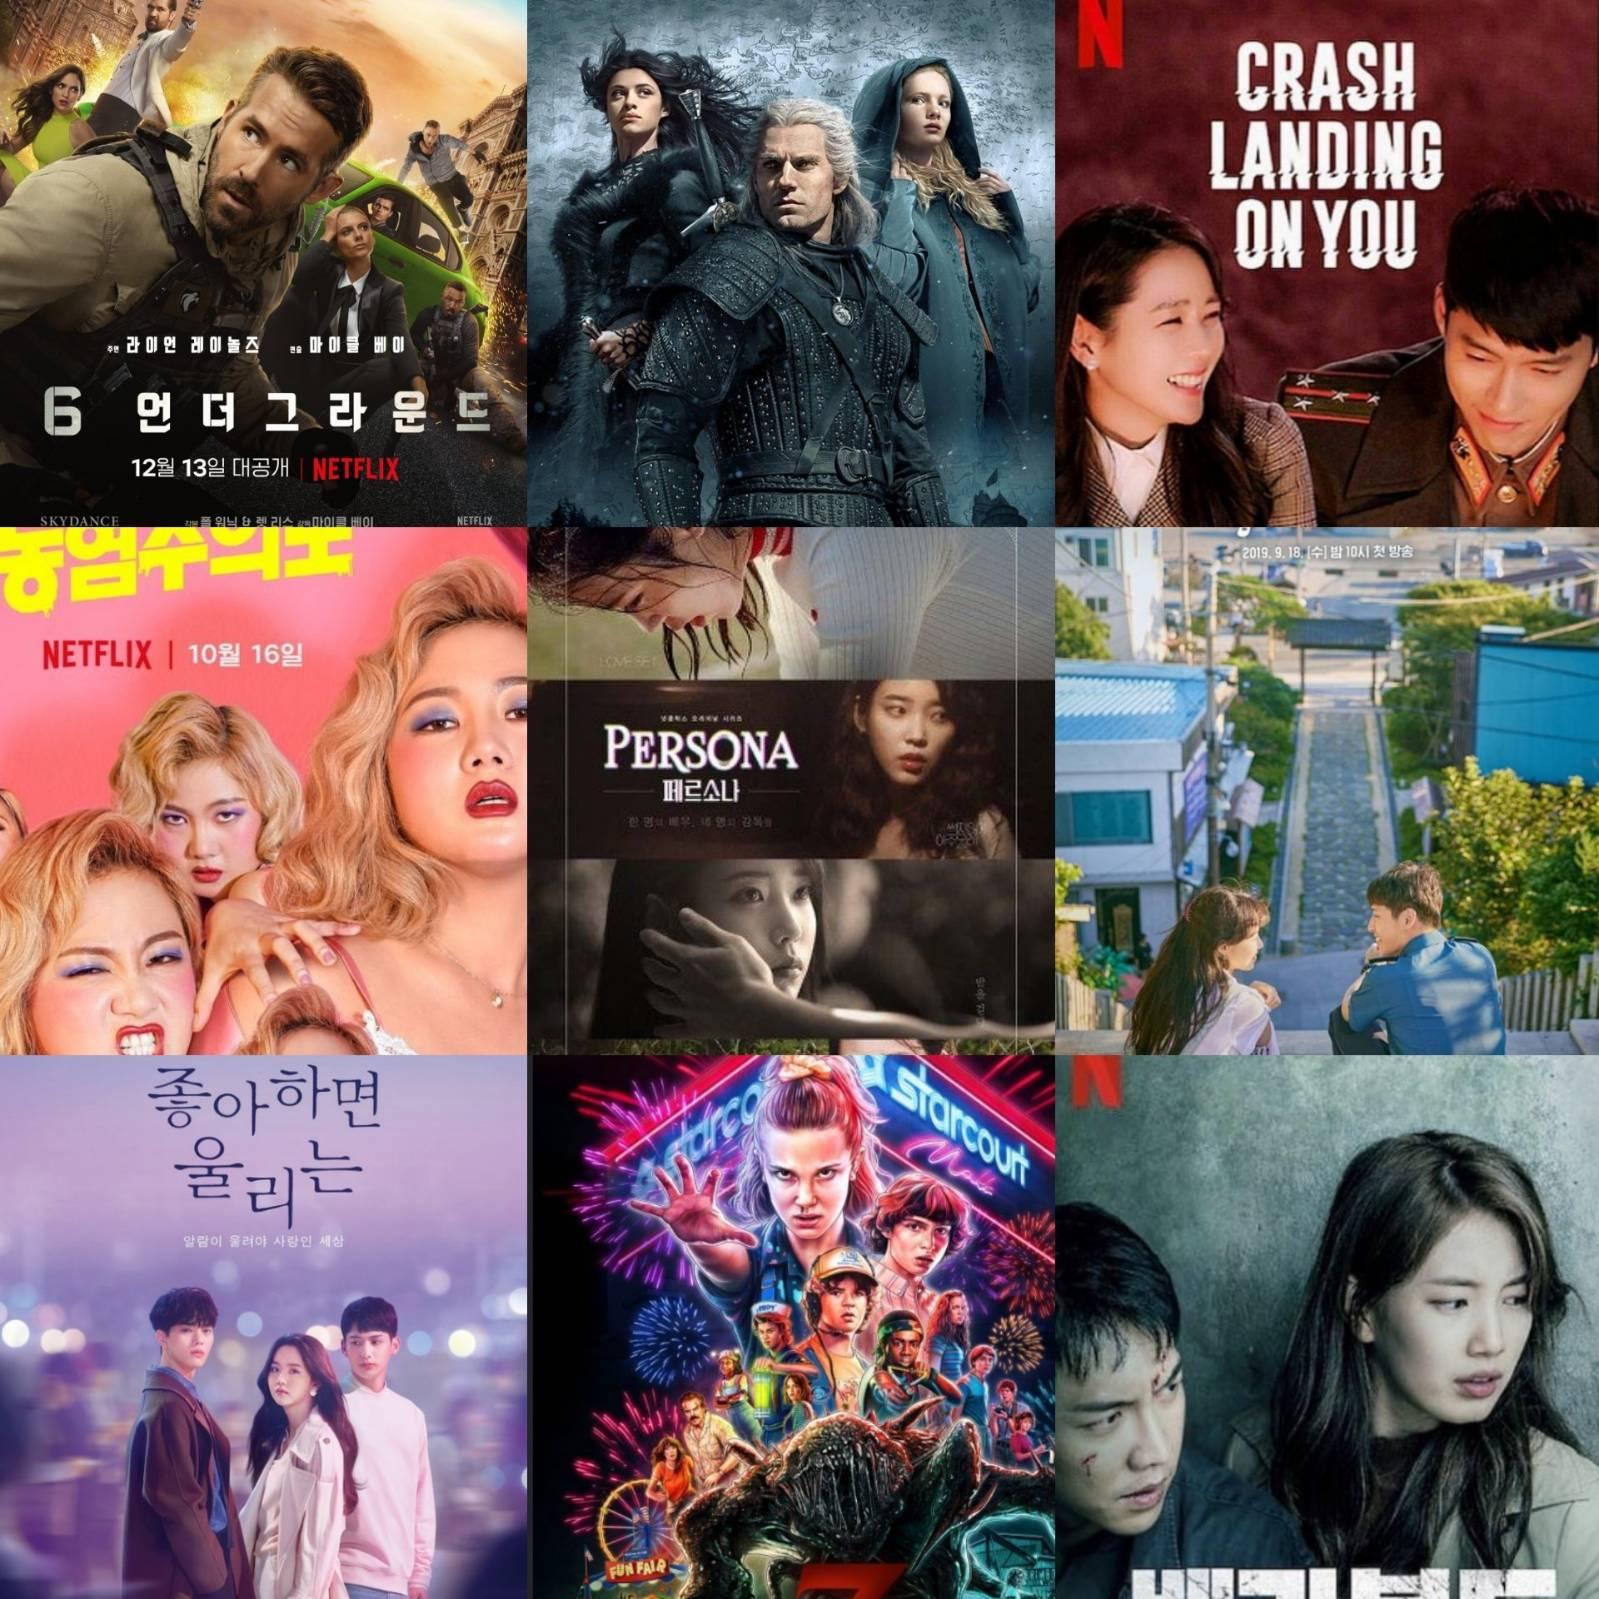 ผลงานภาพยนตร์ ซีรี่ส์ทาง Netflix ที่คนเกาหลีดูมากที่สุดในปี 2019 - Pantip